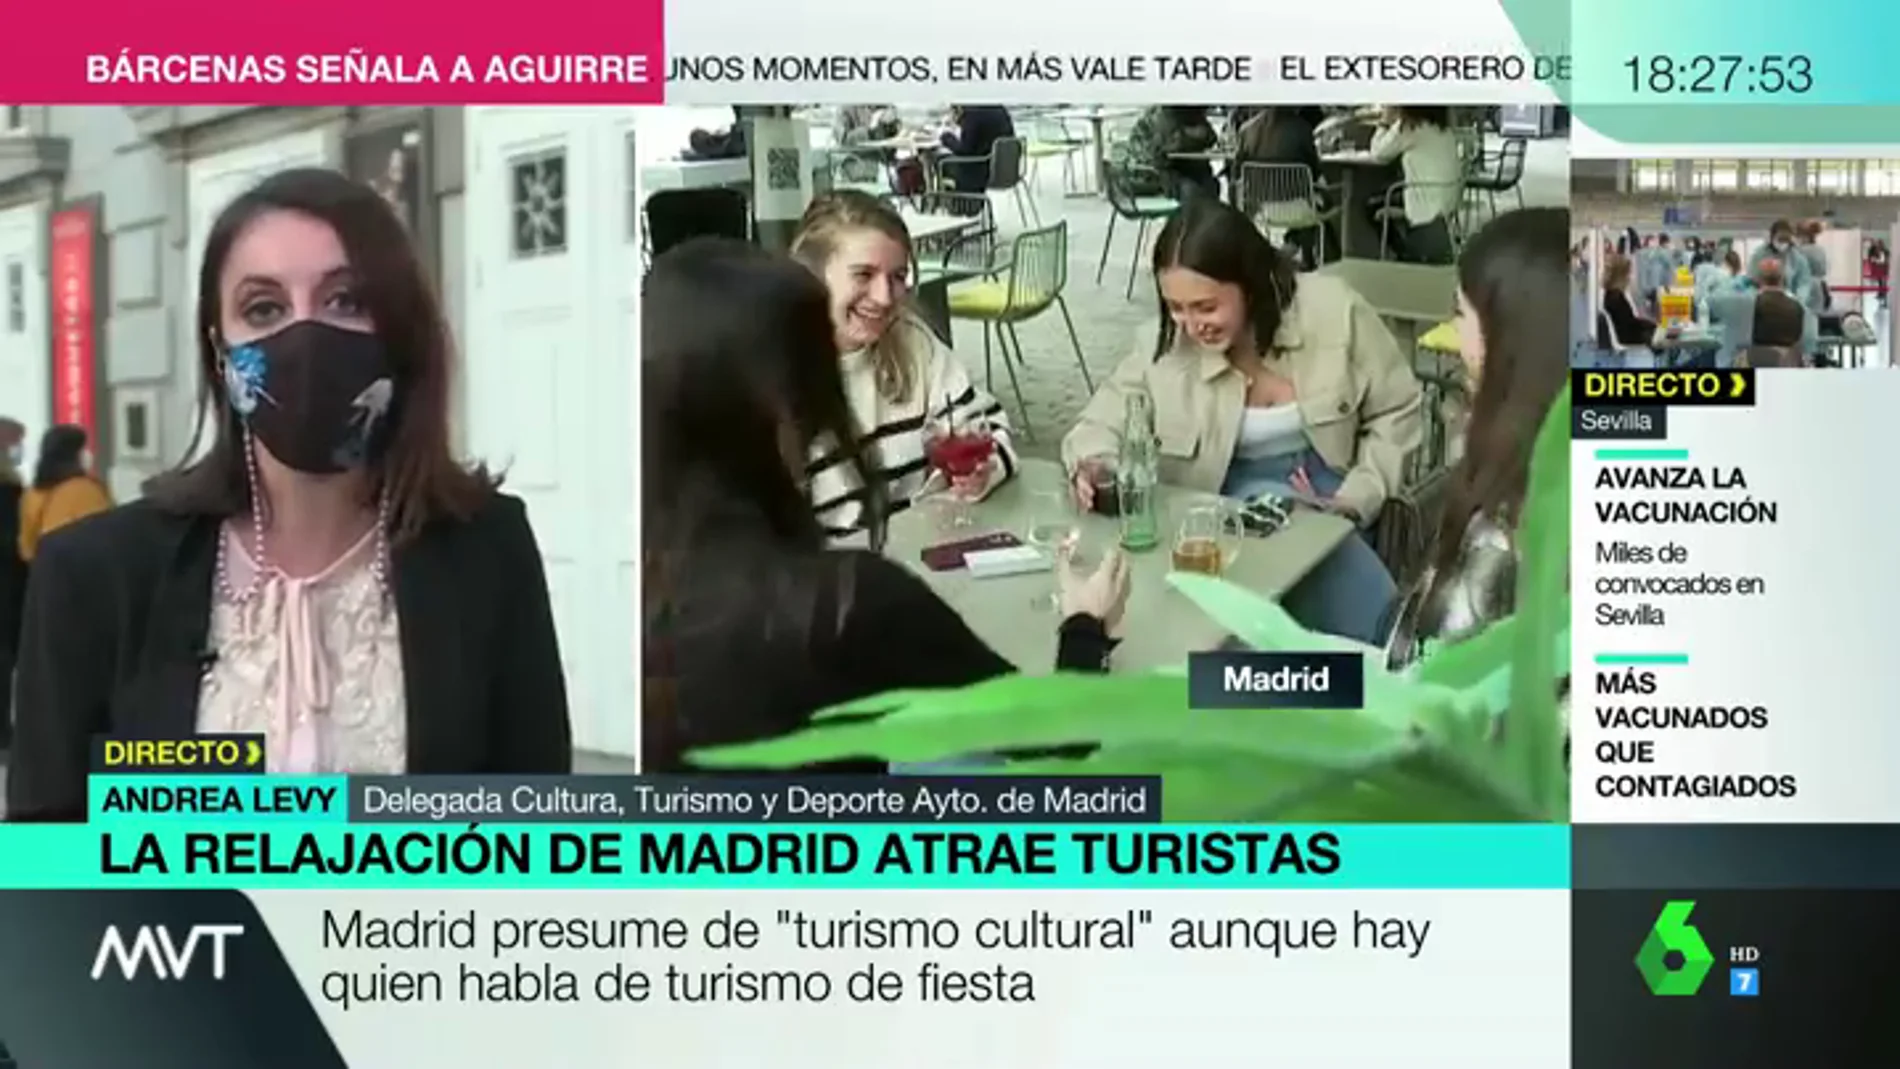 Andrea Levy presume de turismo cultural: "Madrid, en ningún caso, está siendo un reclamo para el turismo de borrachera"